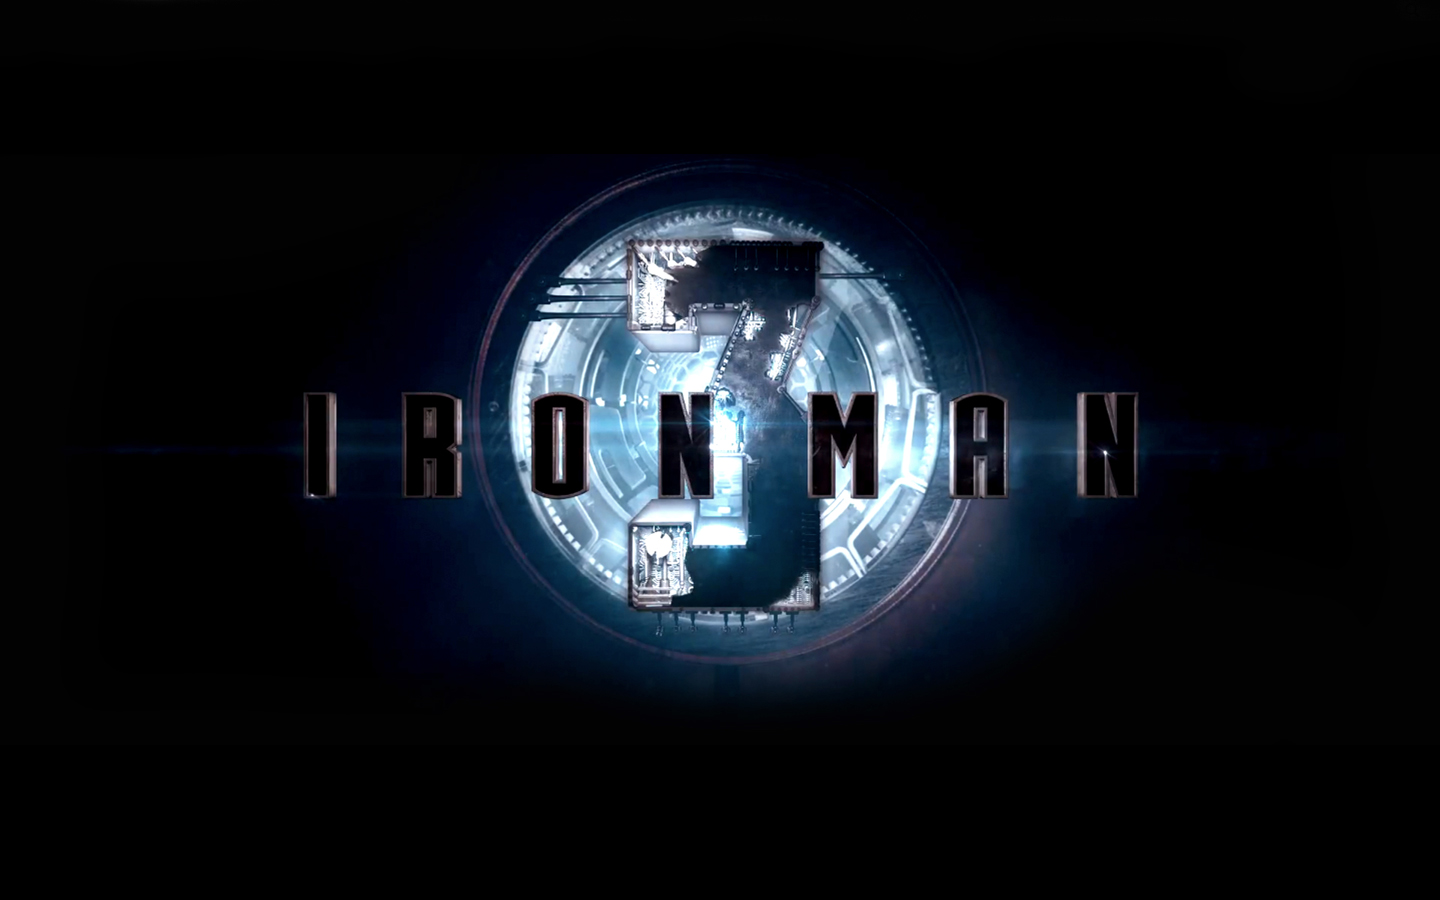 PCデスクトップに映画, 鉄人, アイアンマン3画像を無料でダウンロード